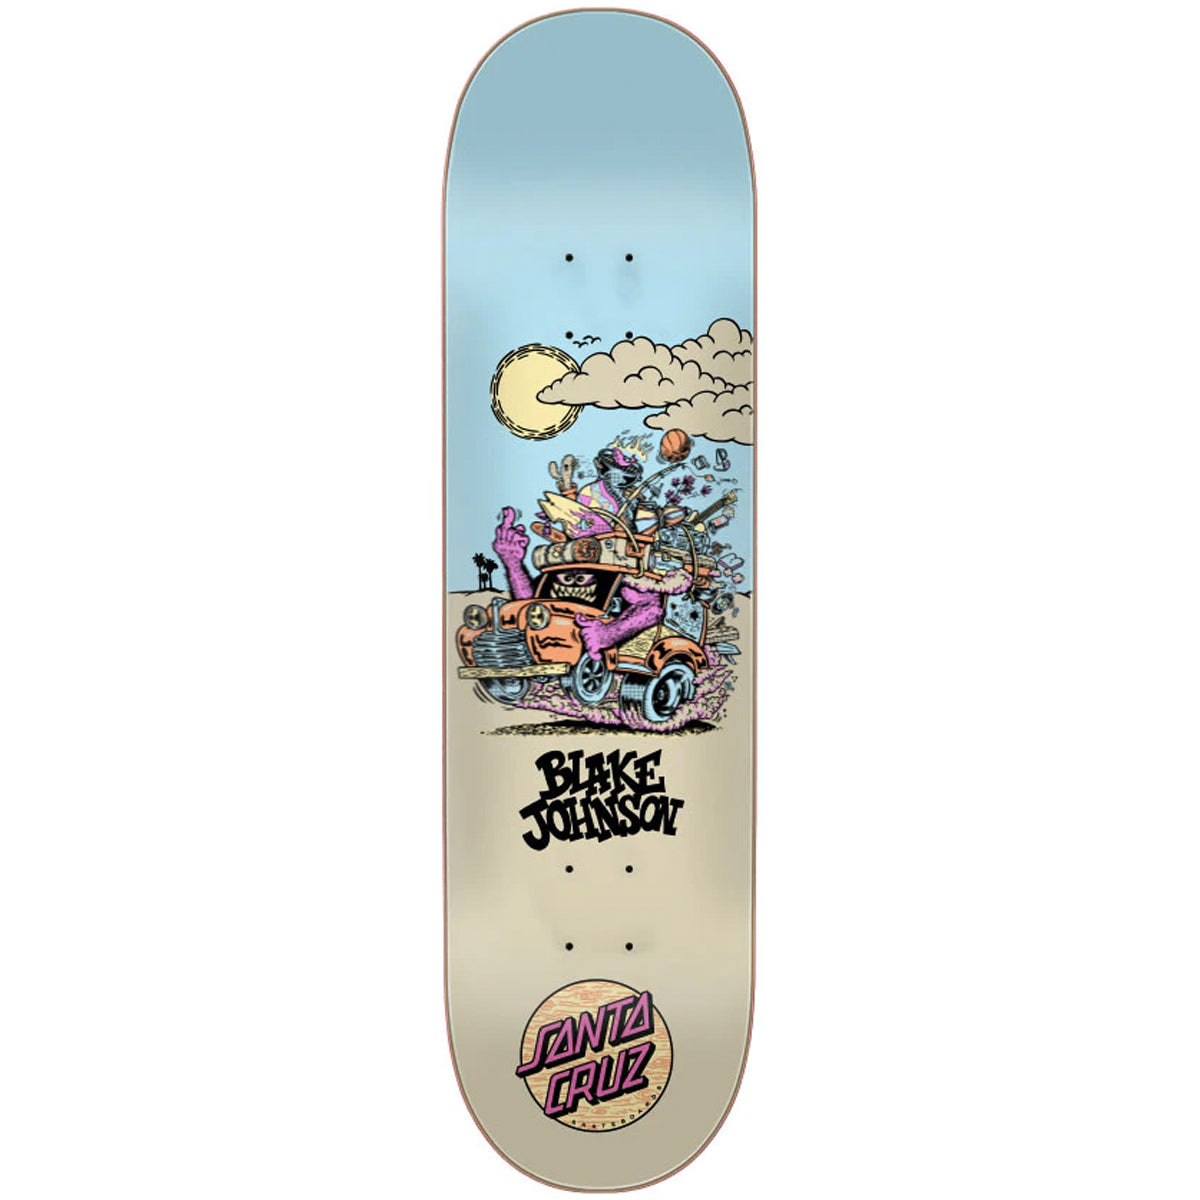 Santa Cruz Johnson Beast Wagon Pro 8.375" Skateboard Deck